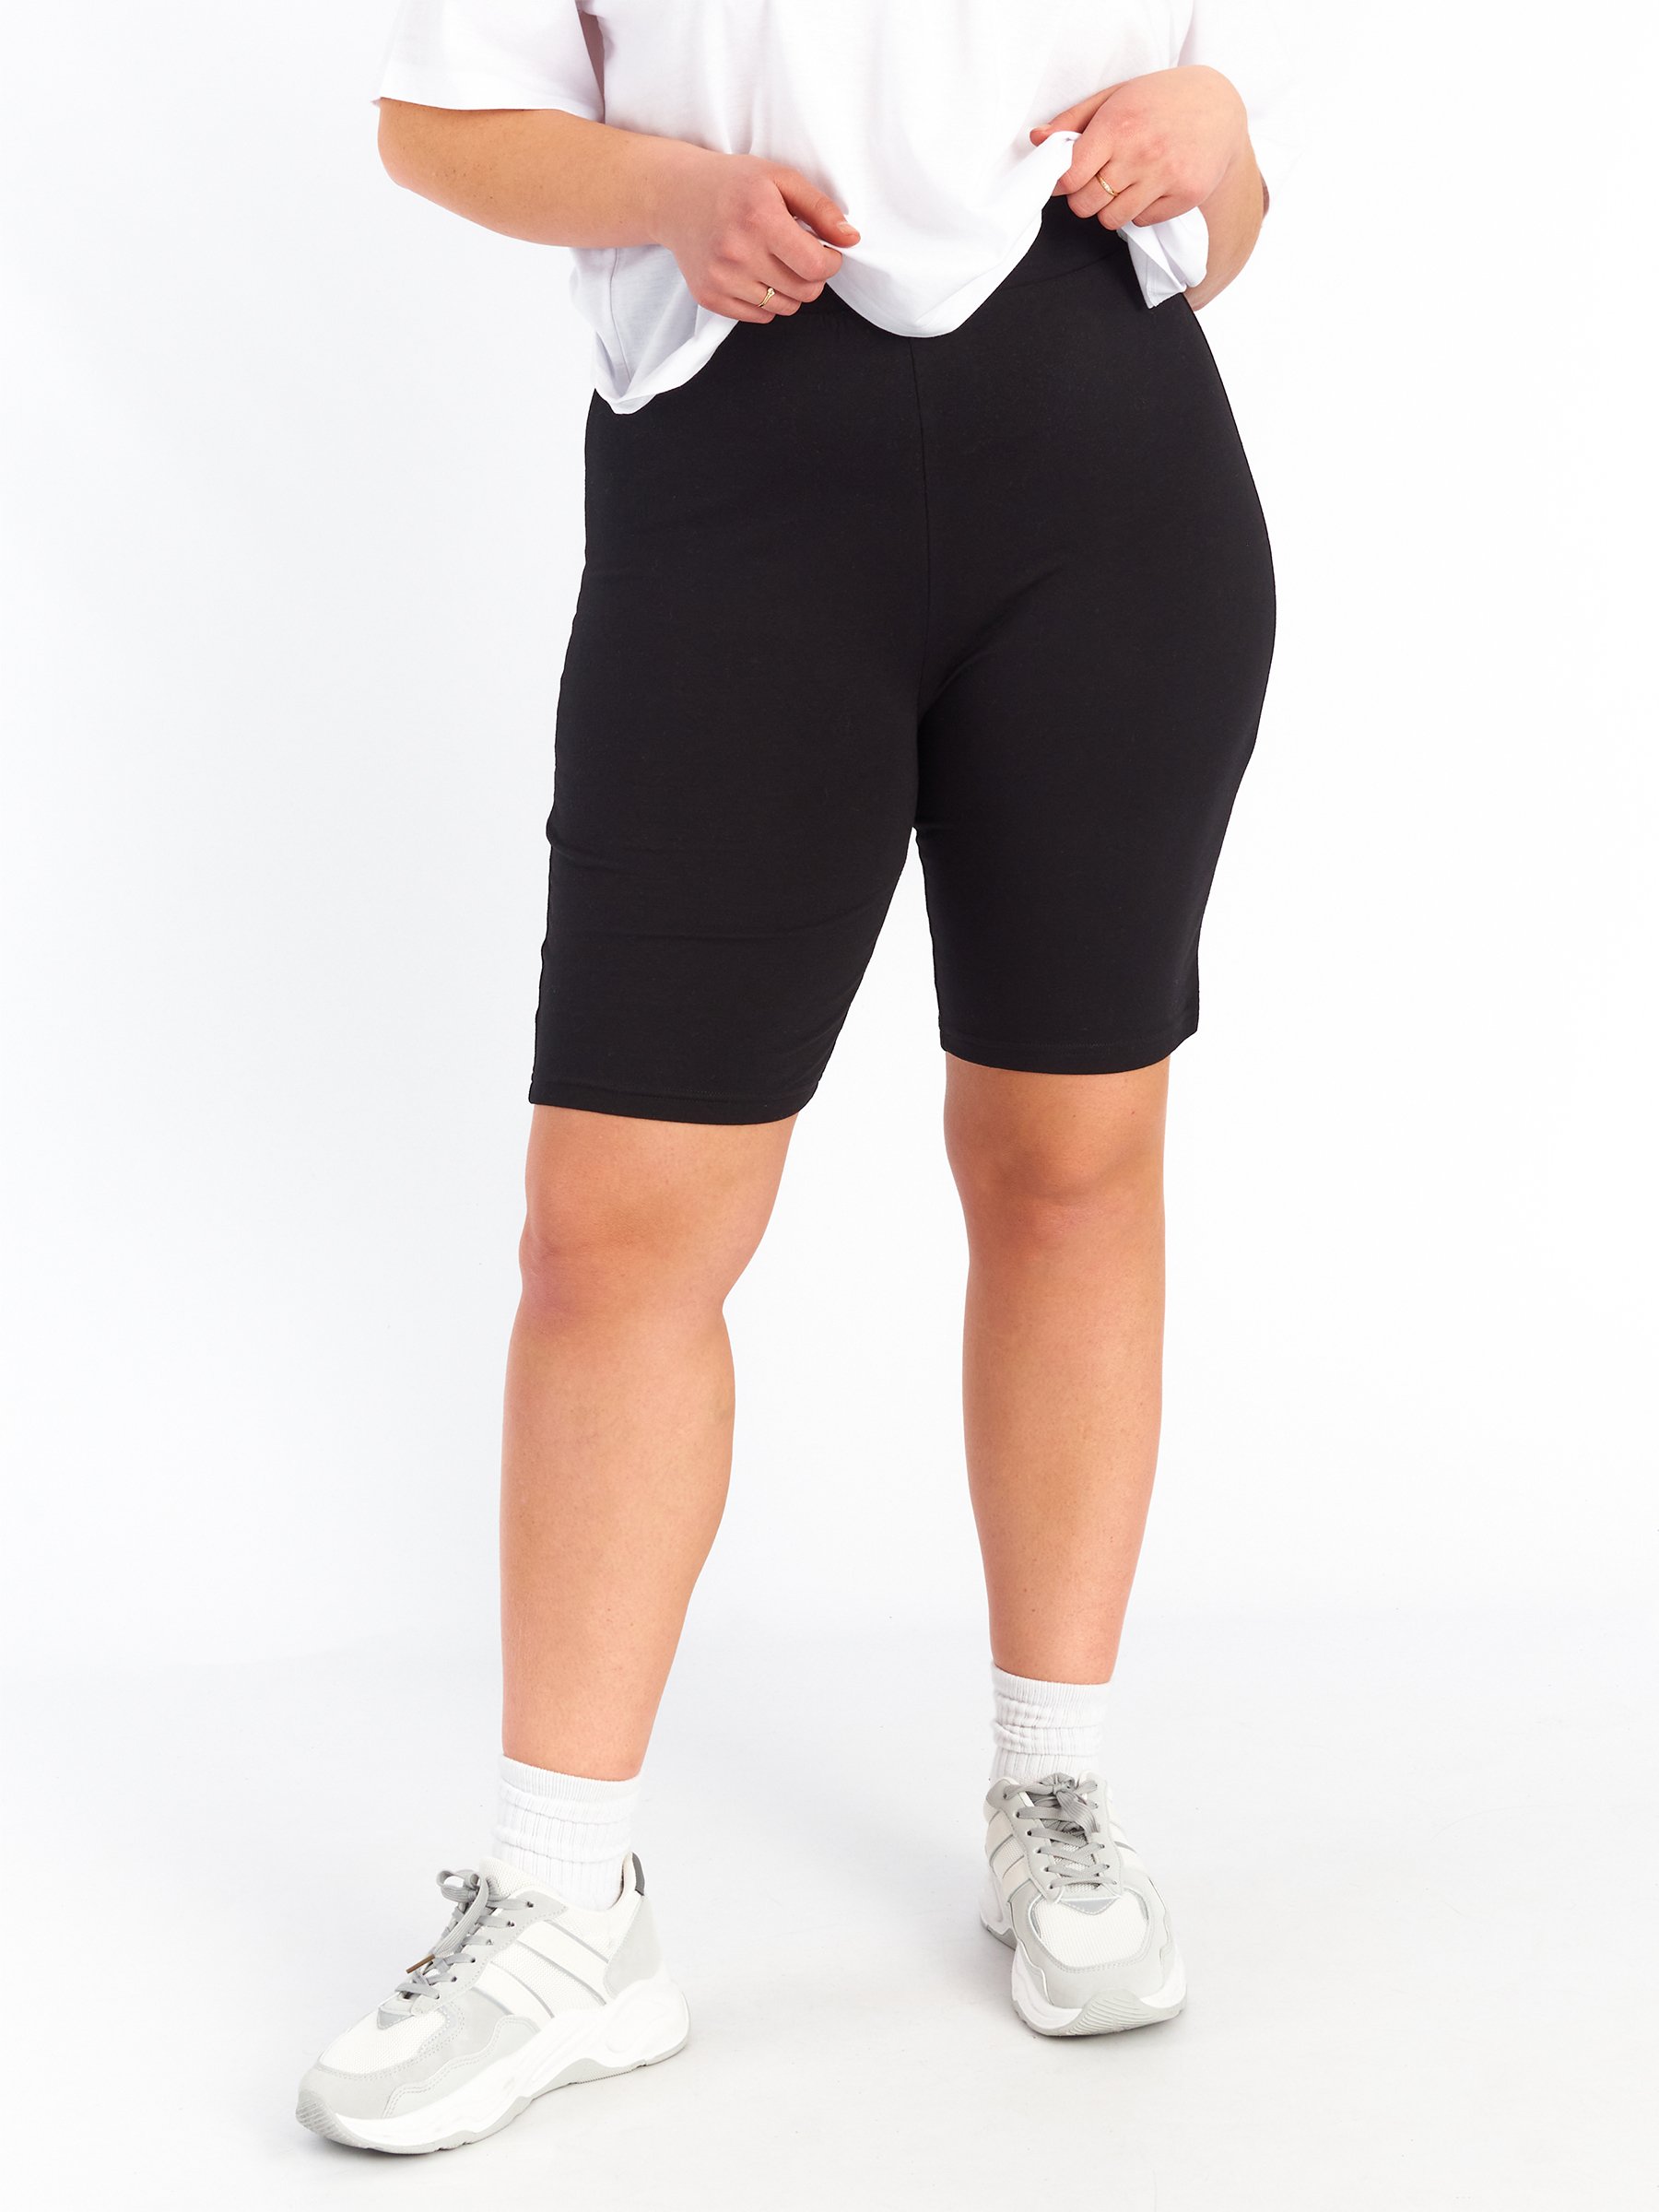 Women's Plus Size Black Bike Shorts